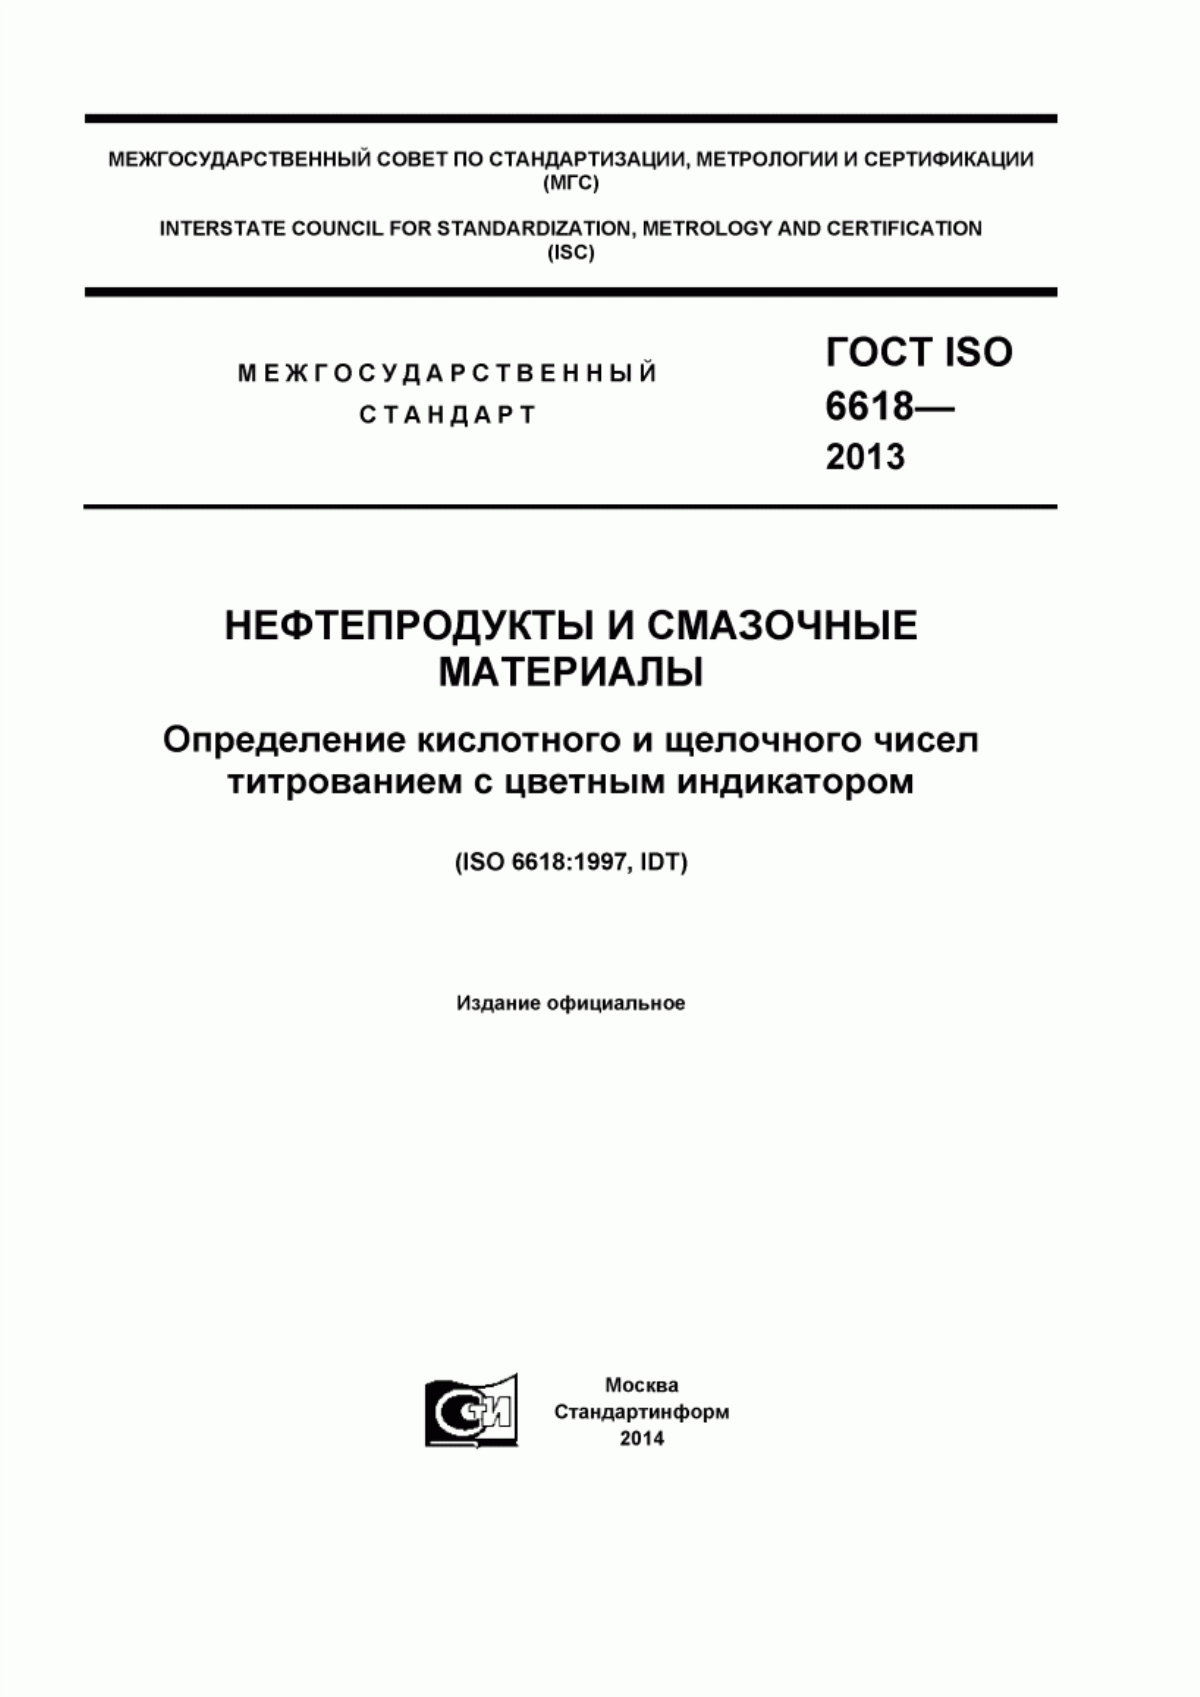 ГОСТ ISO 6618-2013 Нефтепродукты и смазочные материалы. Определение кислотного и щелочного чисел титрованием с цветным индикатором